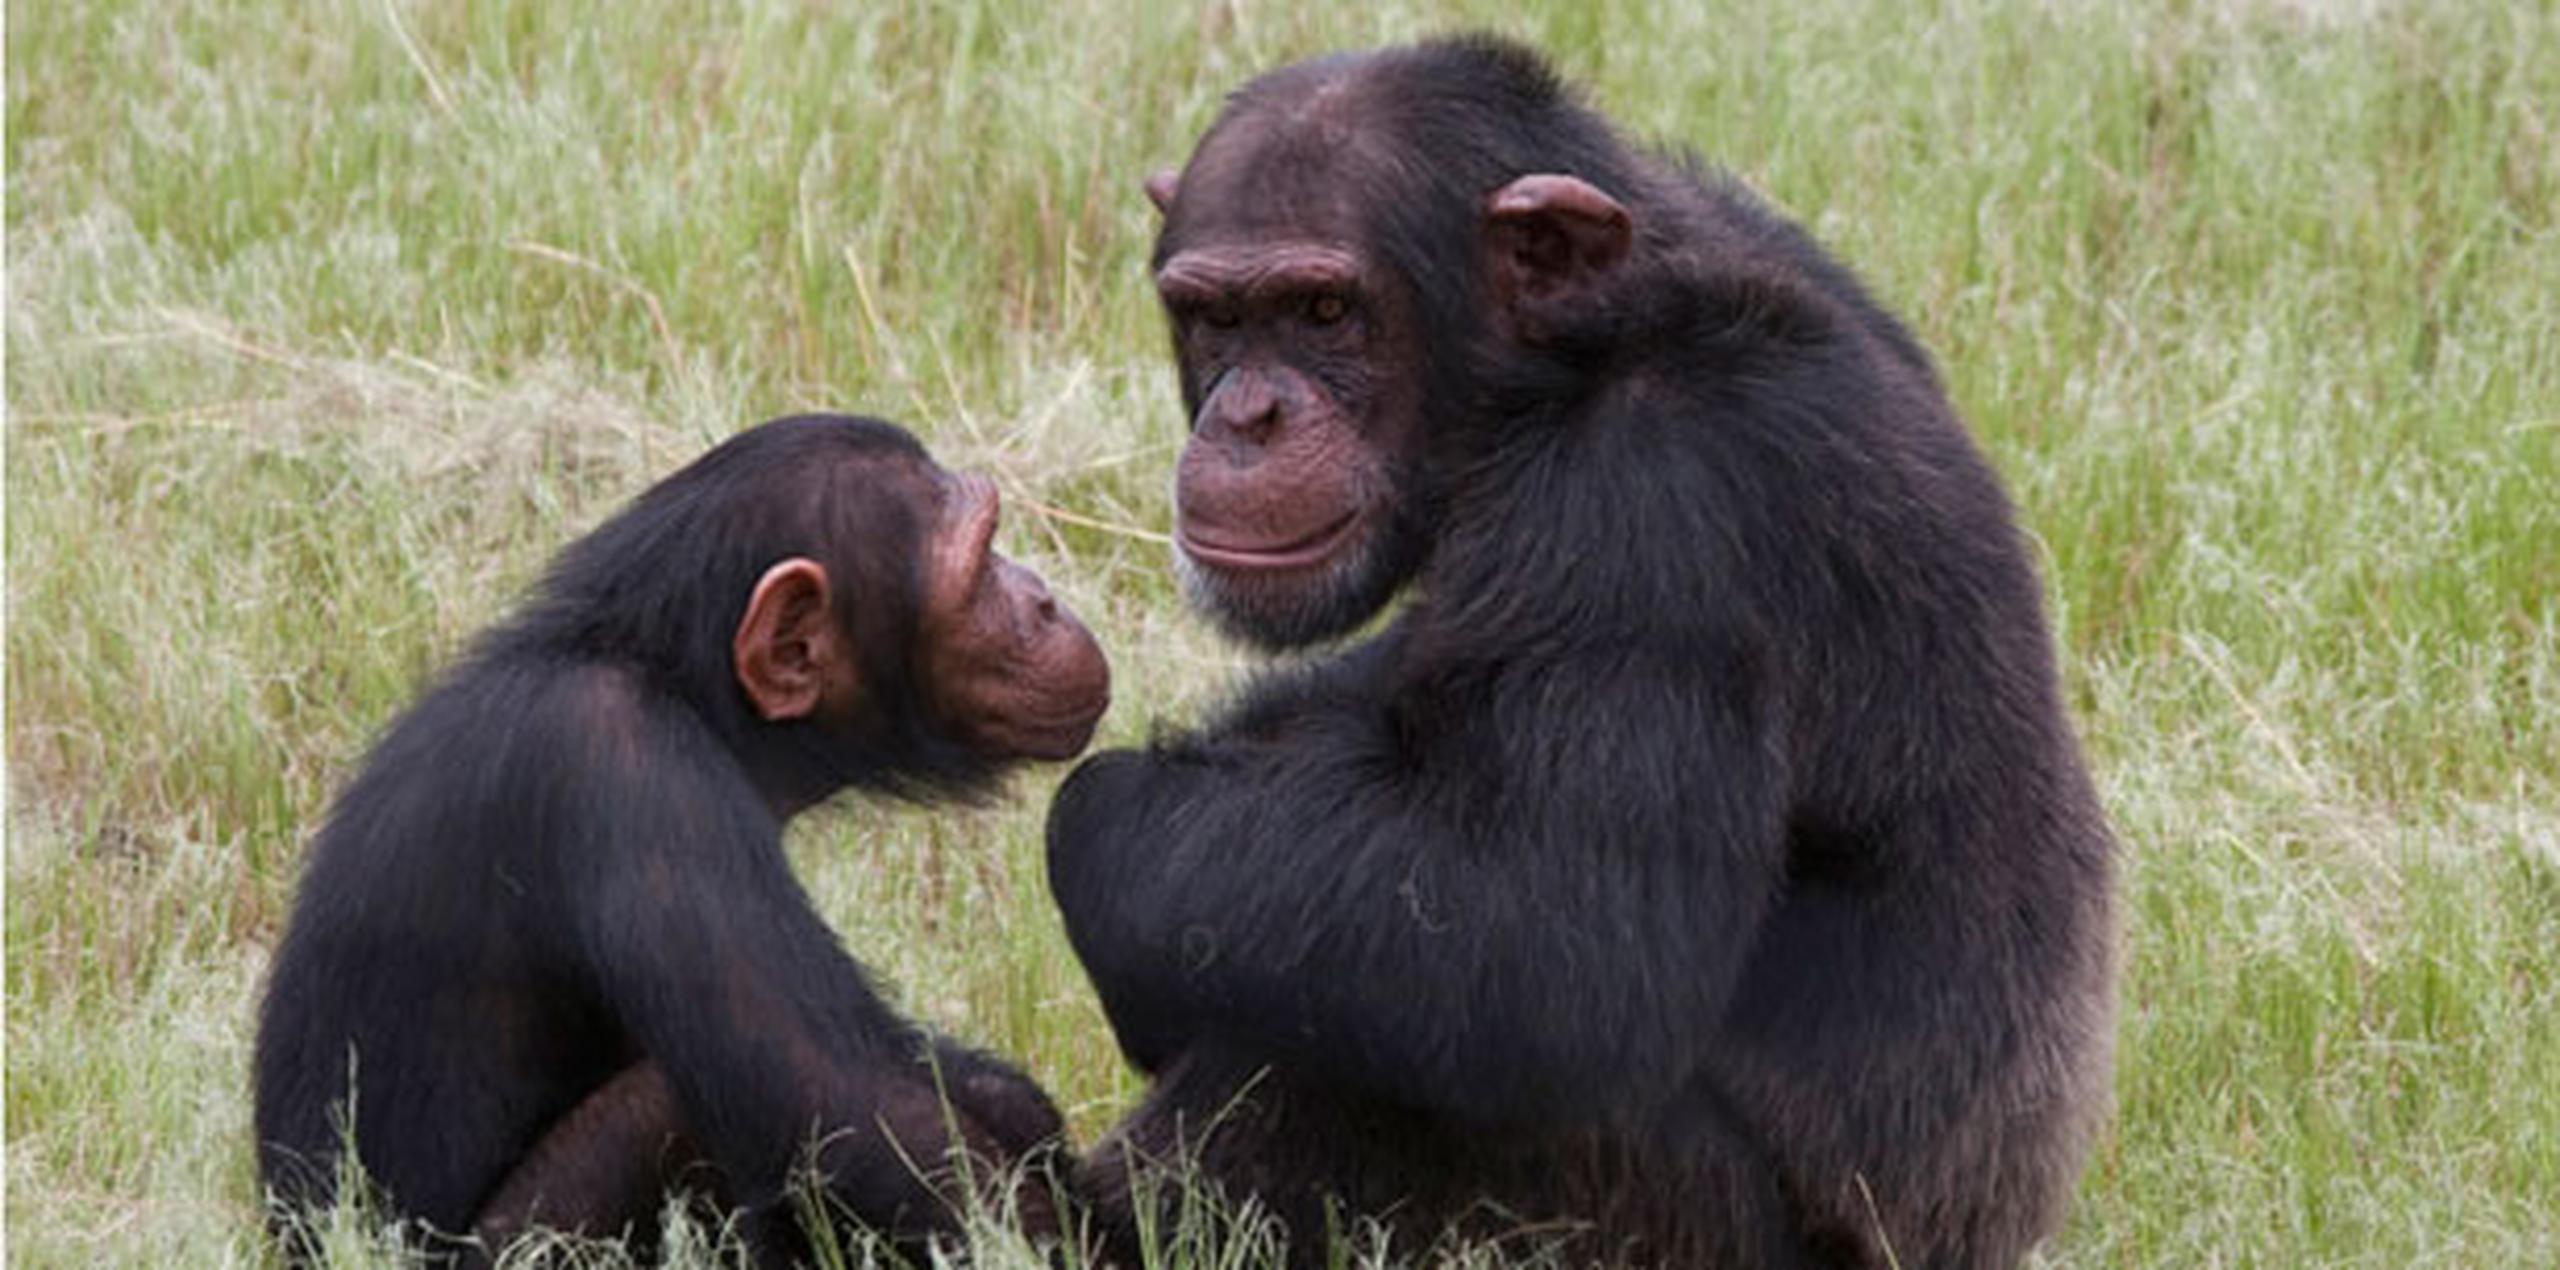 Se calcula que más de 22,000 grandes simios han sido vendidos ilegalmente en un período de siete años que terminó en 2011. (AP)